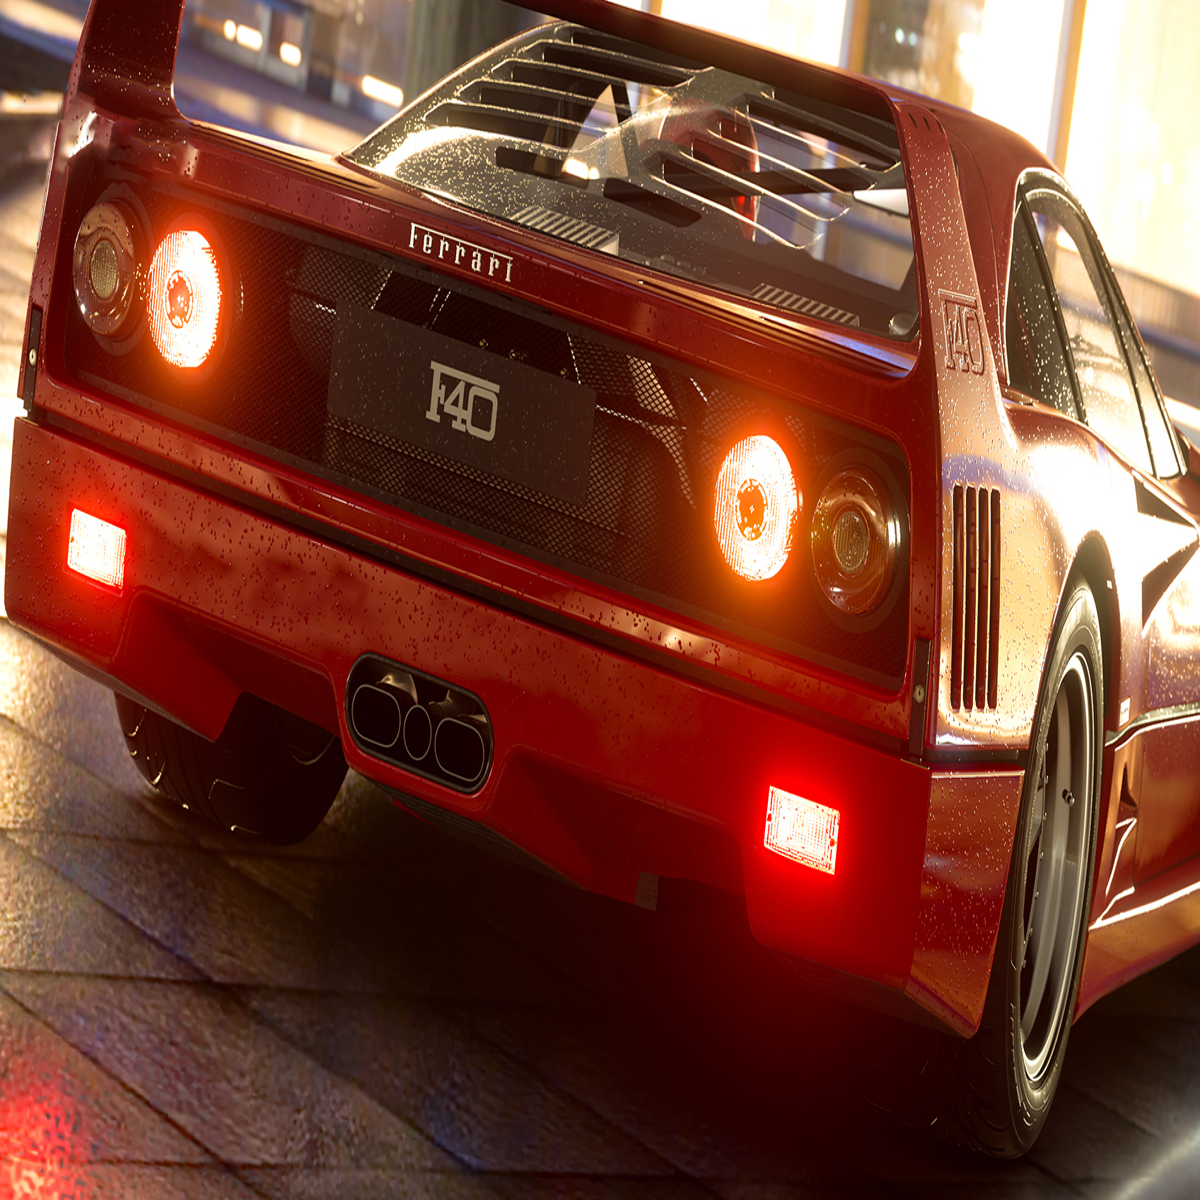 Gran Turismo 7: Grafik-Hammer kommt auf PS5 - mit altebekannter Schwäche -  FOCUS online